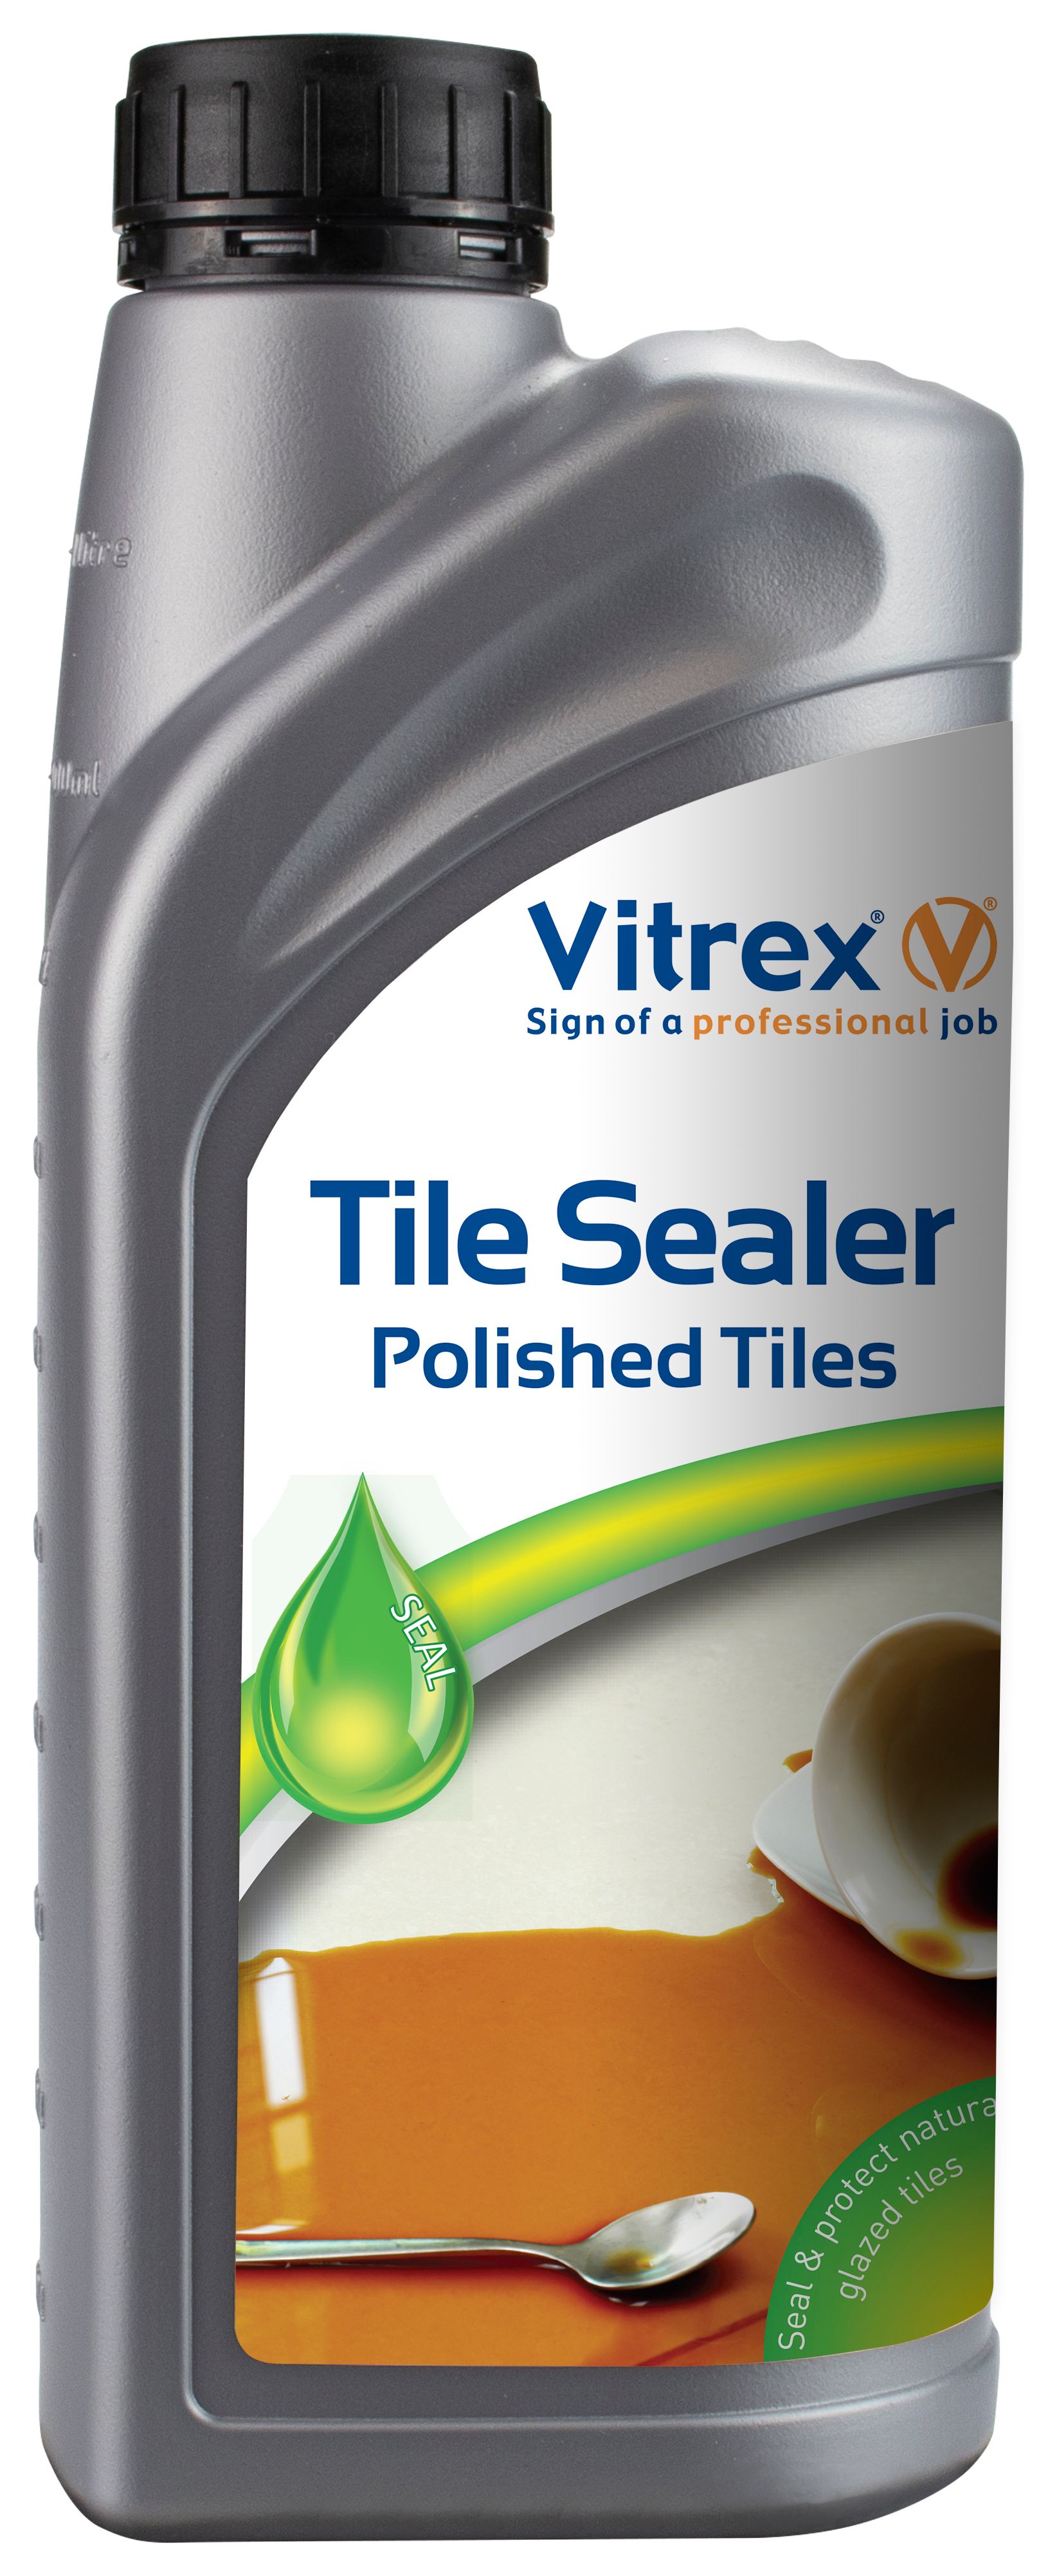 Image of Vitrex Polished Tile Sealer 1 Litre